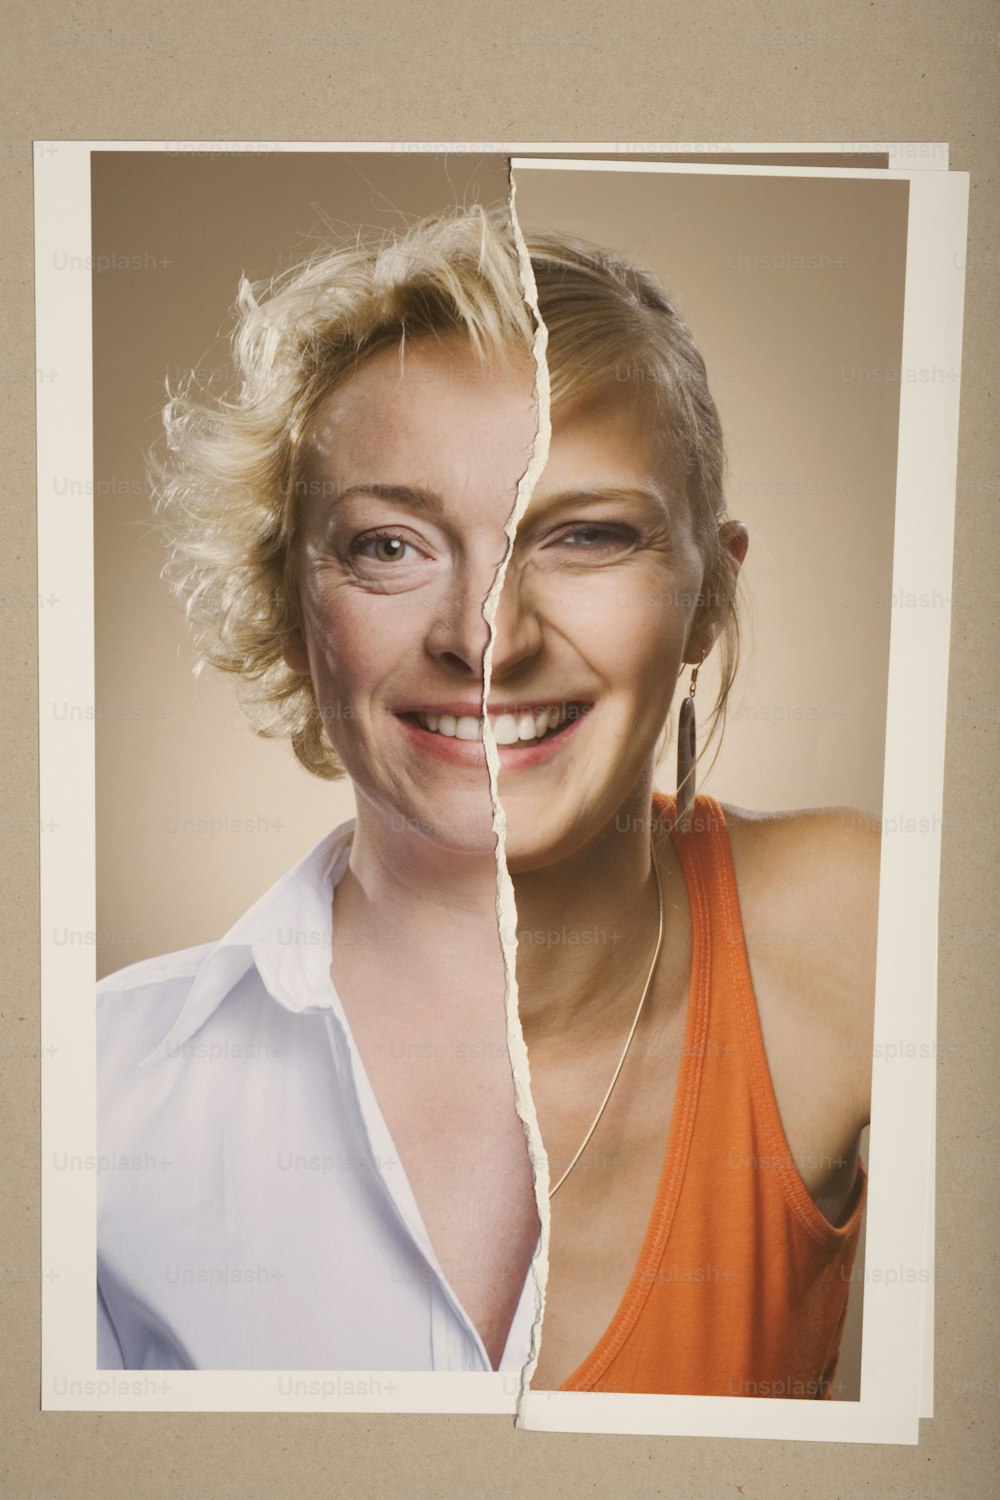 Una mujer con cabello rubio y una camisa blanca tiene una imagen rasgada de su cara